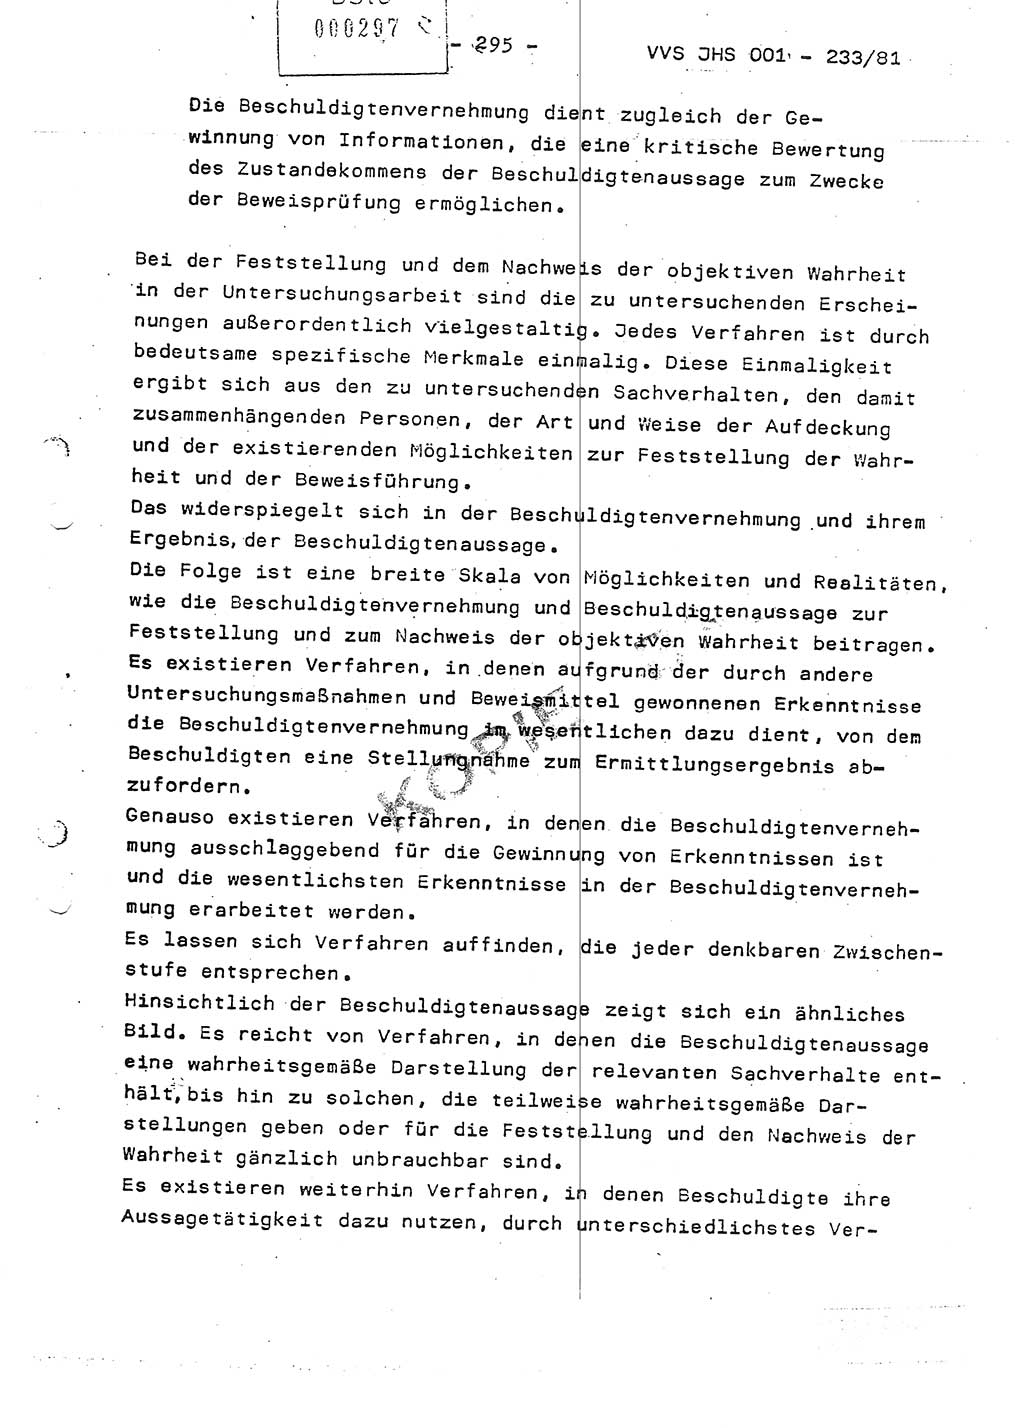 Dissertation Oberstleutnant Horst Zank (JHS), Oberstleutnant Dr. Karl-Heinz Knoblauch (JHS), Oberstleutnant Gustav-Adolf Kowalewski (HA Ⅸ), Oberstleutnant Wolfgang Plötner (HA Ⅸ), Ministerium für Staatssicherheit (MfS) [Deutsche Demokratische Republik (DDR)], Juristische Hochschule (JHS), Vertrauliche Verschlußsache (VVS) o001-233/81, Potsdam 1981, Blatt 295 (Diss. MfS DDR JHS VVS o001-233/81 1981, Bl. 295)